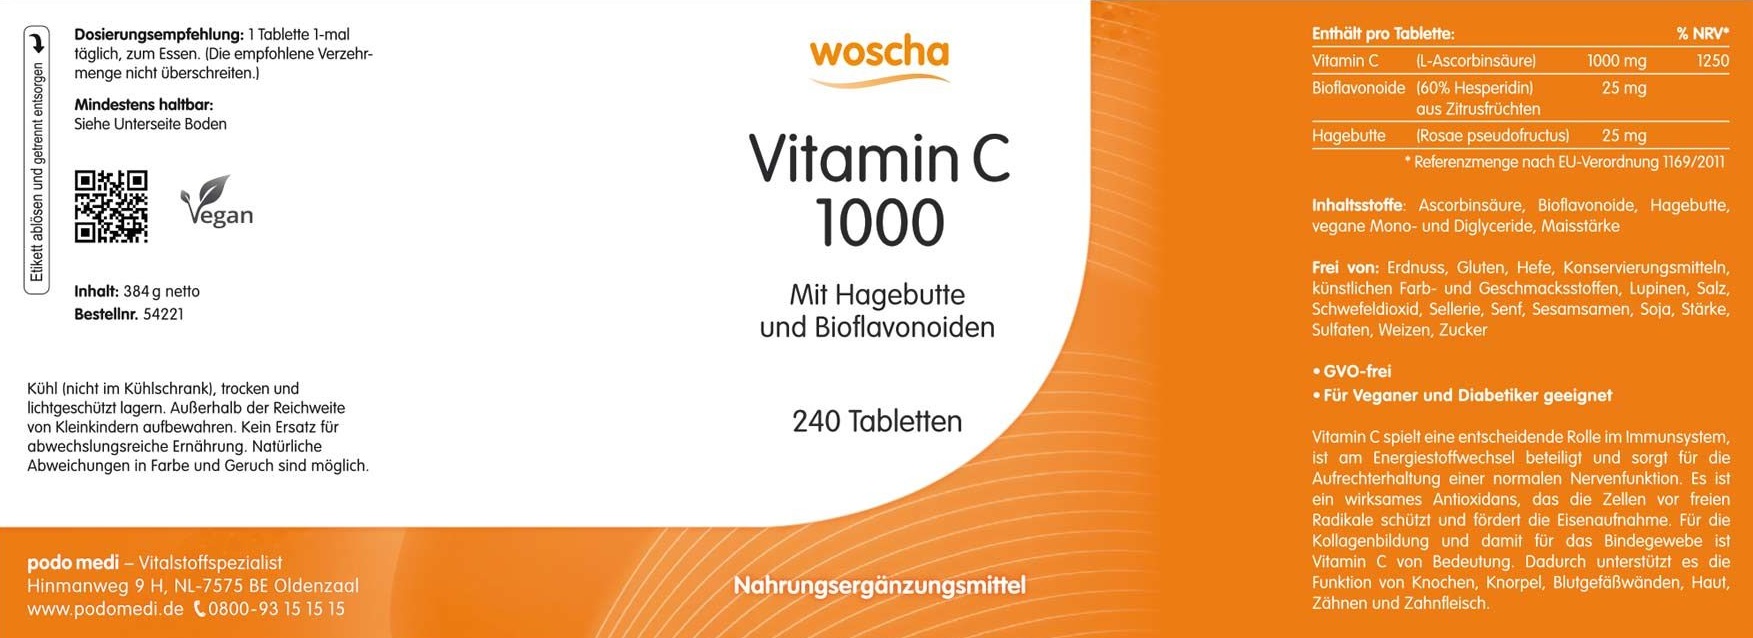 Woscha Vitamin C 1000 mit Hagebutte von podo medi beinhaltet 240 Tabletten Etikett